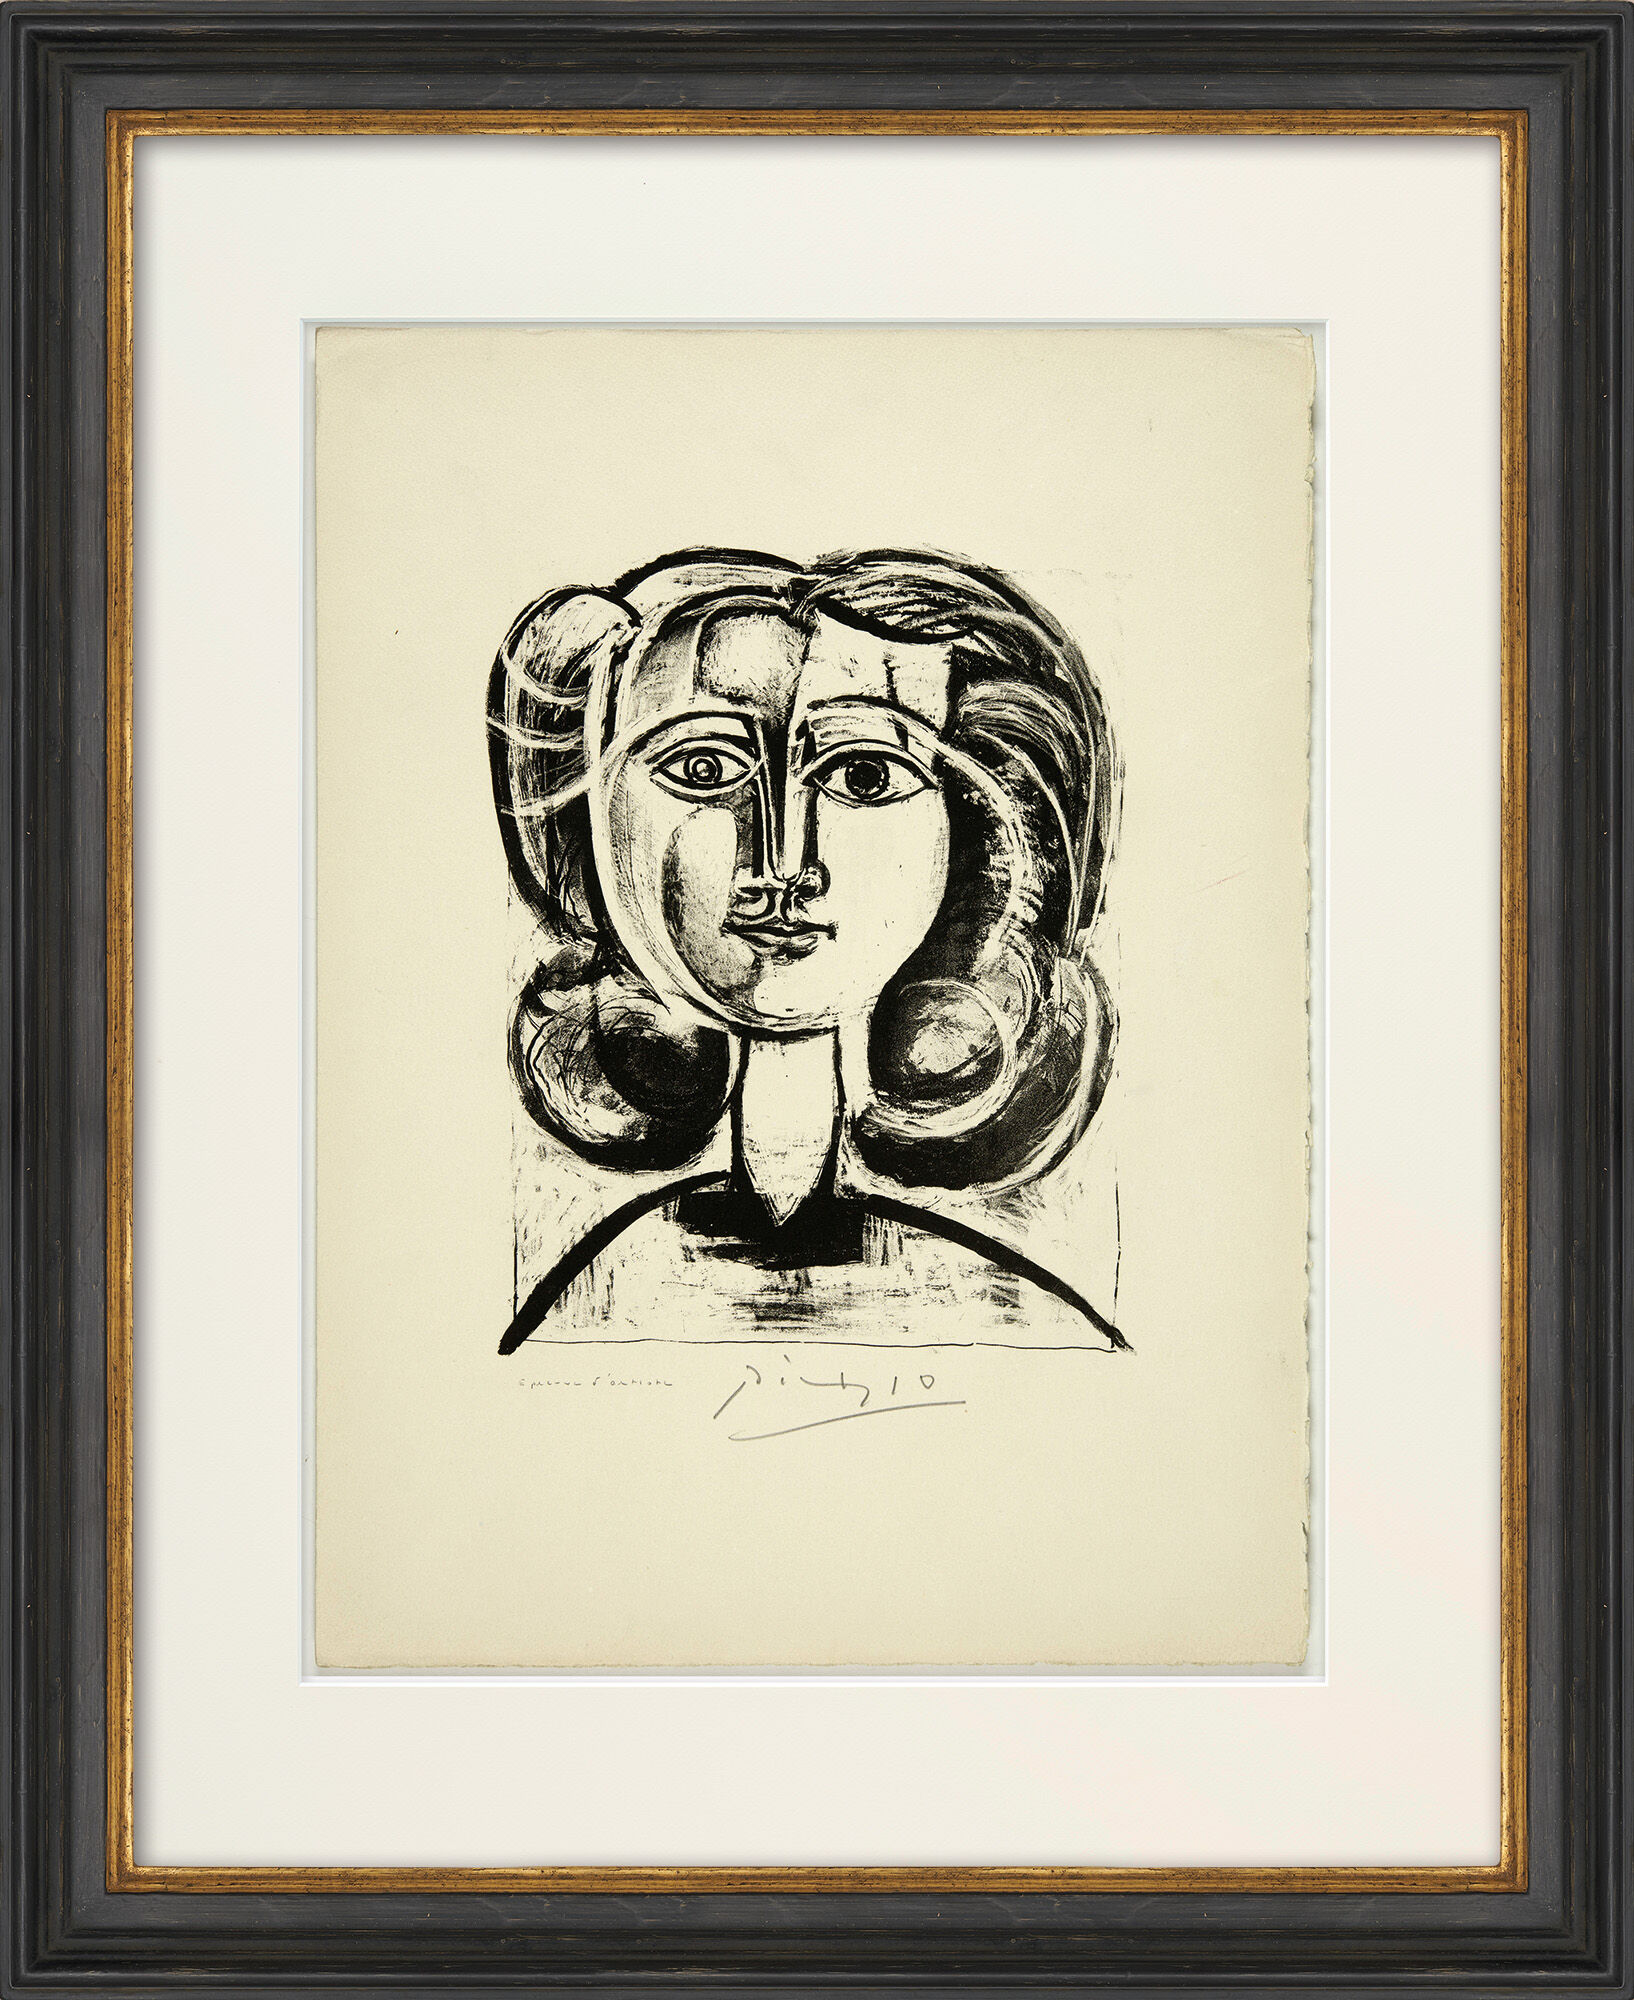 Picture "Tête de Jeune Fille" (1945) by Pablo Picasso